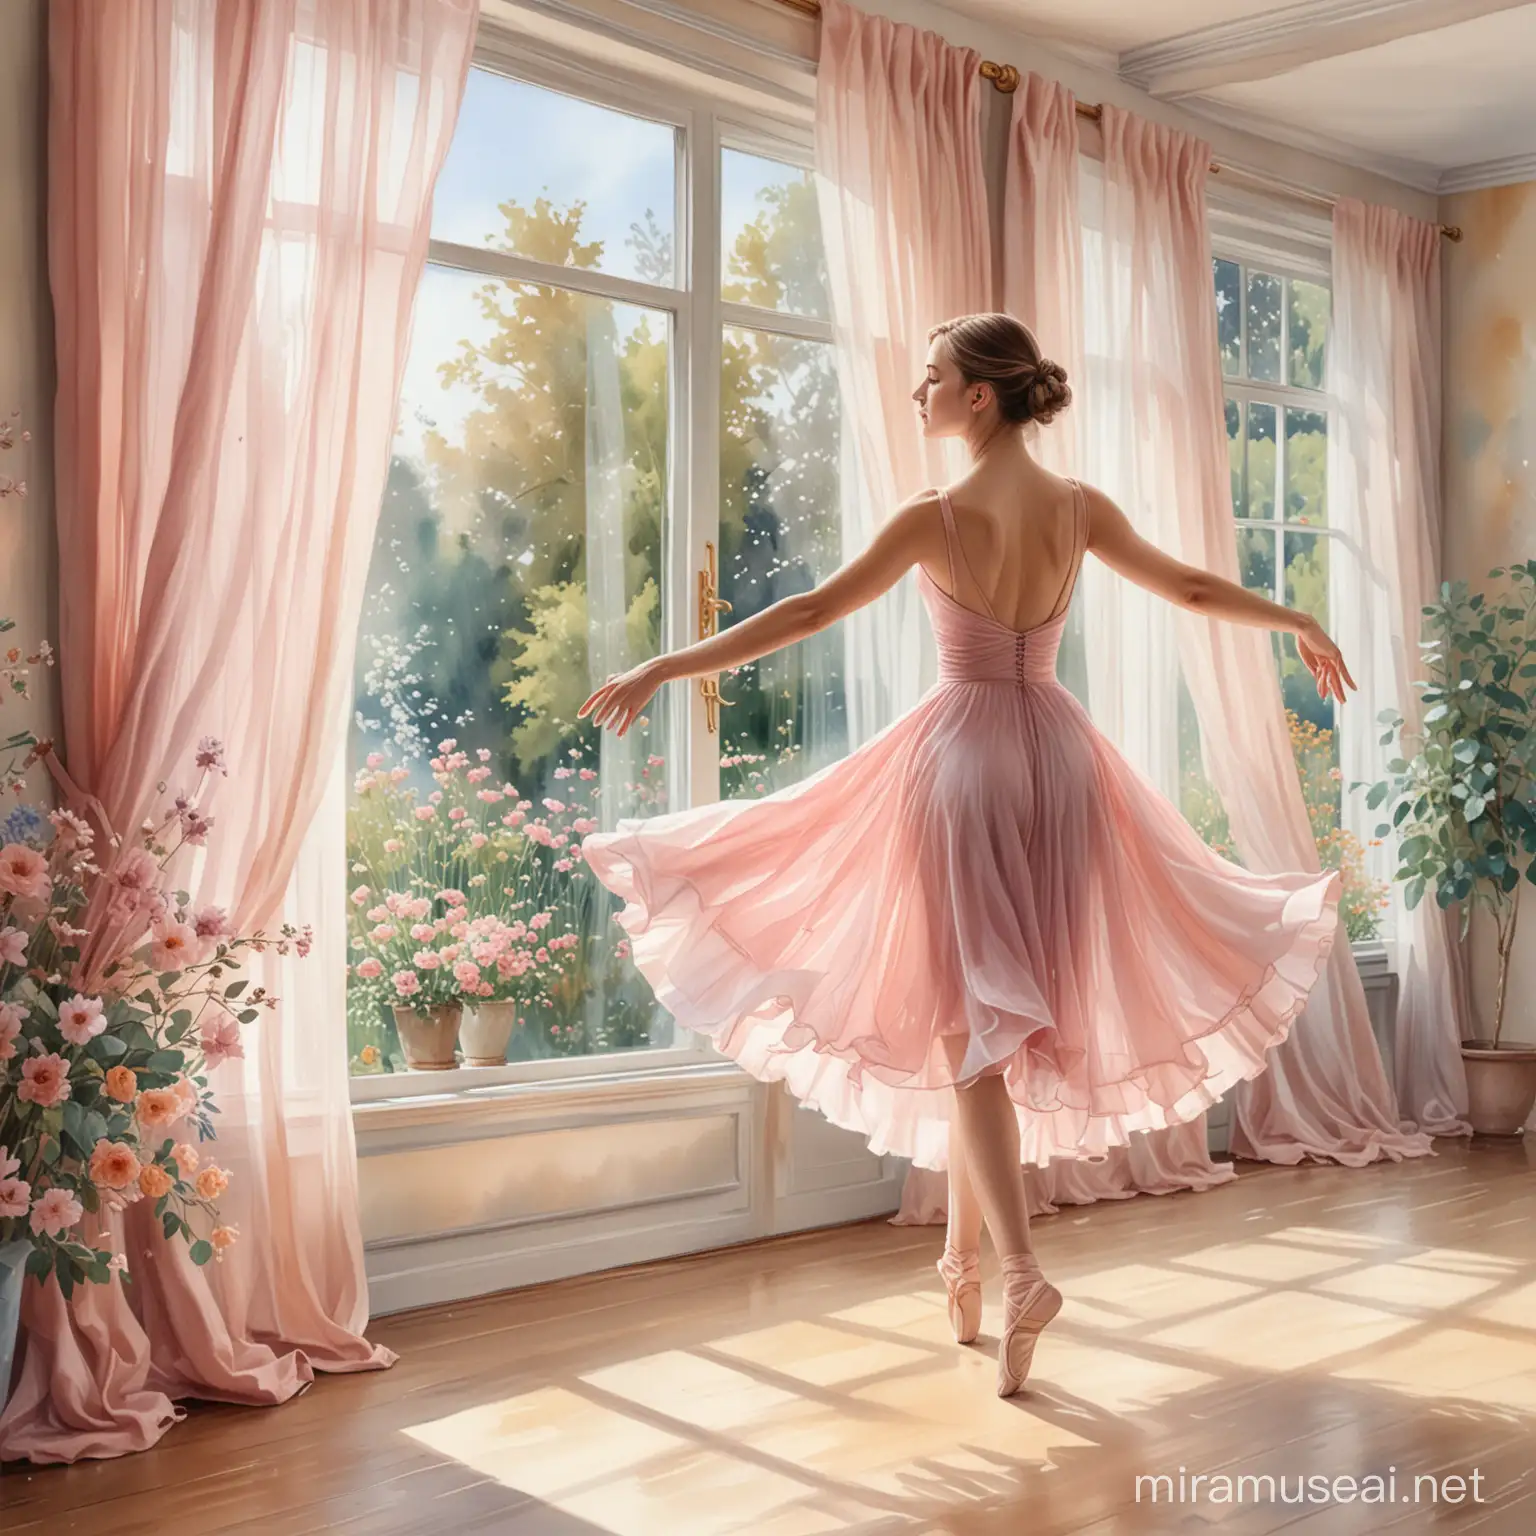 Graceful Ballerina in Flowing Pink Dress Dancing in Studio with Garden View